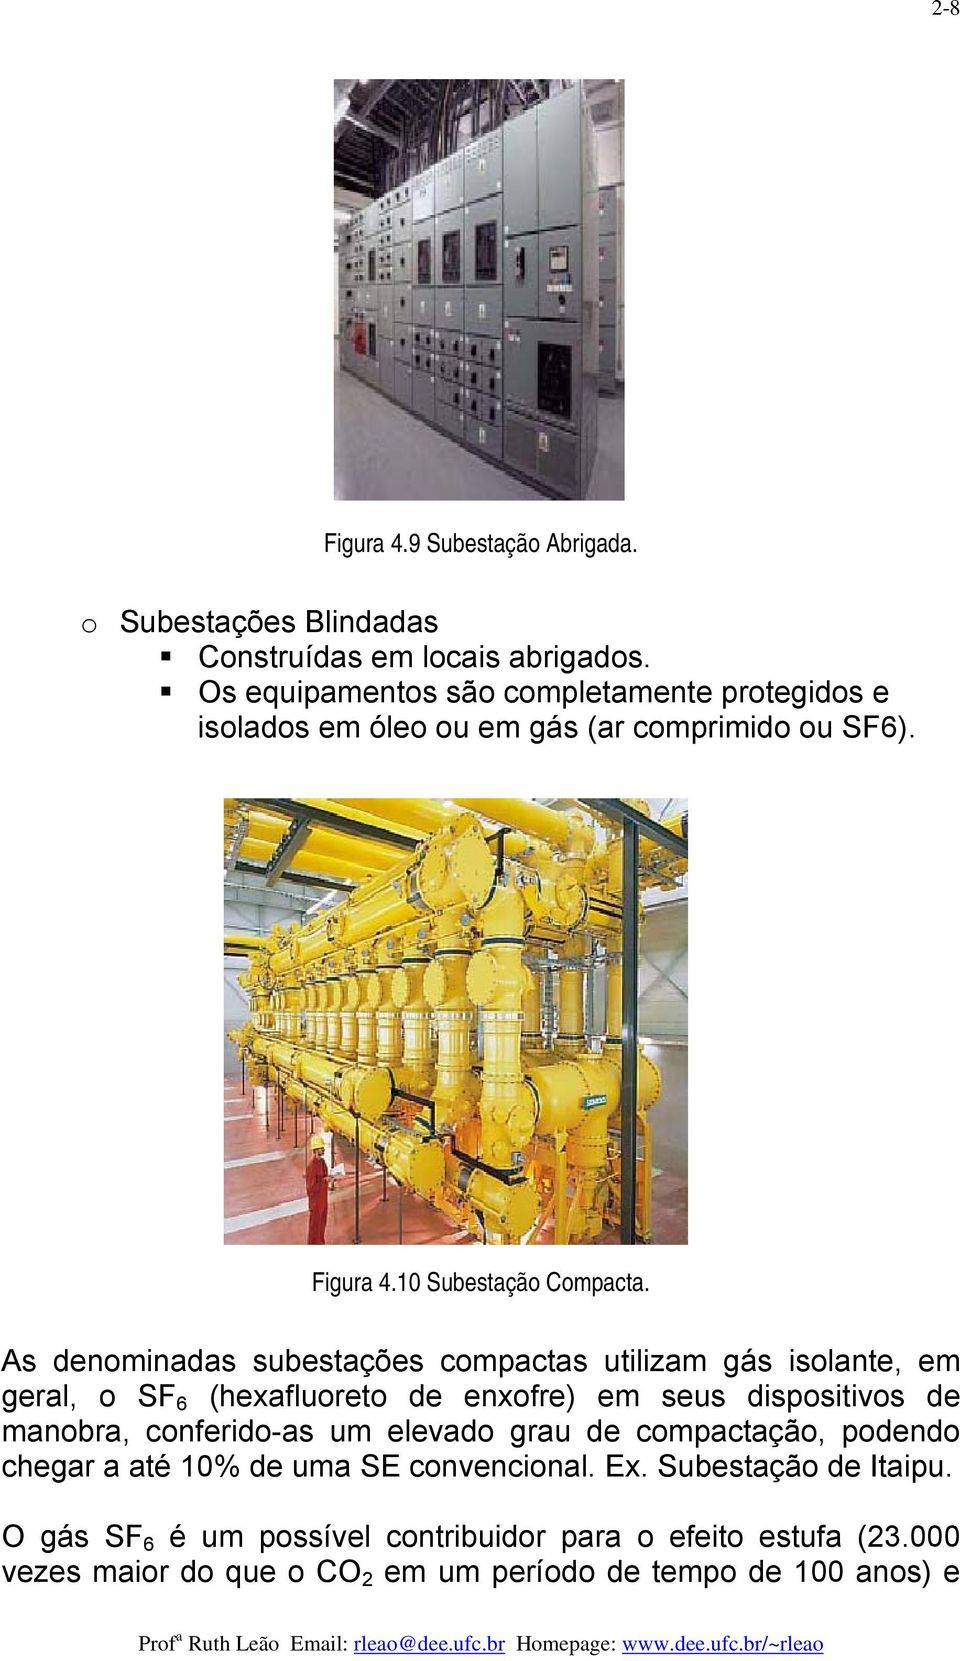 As denominadas subestações compactas utilizam gás isolante, em geral, o SF 6 (hexafluoreto de enxofre) em seus dispositivos de manobra, conferido-as um